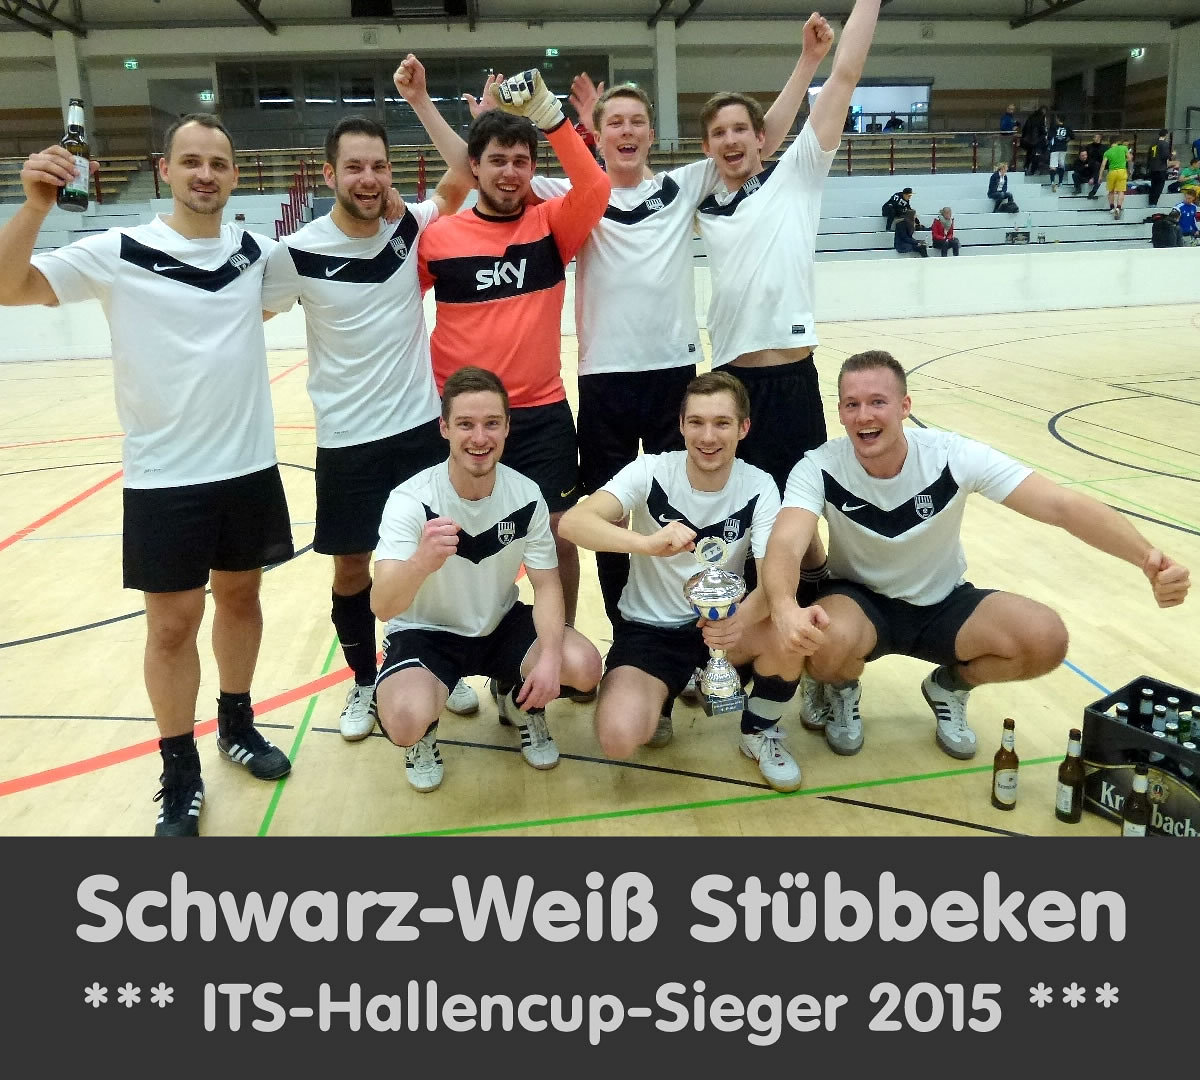 Its hallencup 2015   its hallencup sieger   schwarz wei%c3%9f st%c3%bcbbeken retina